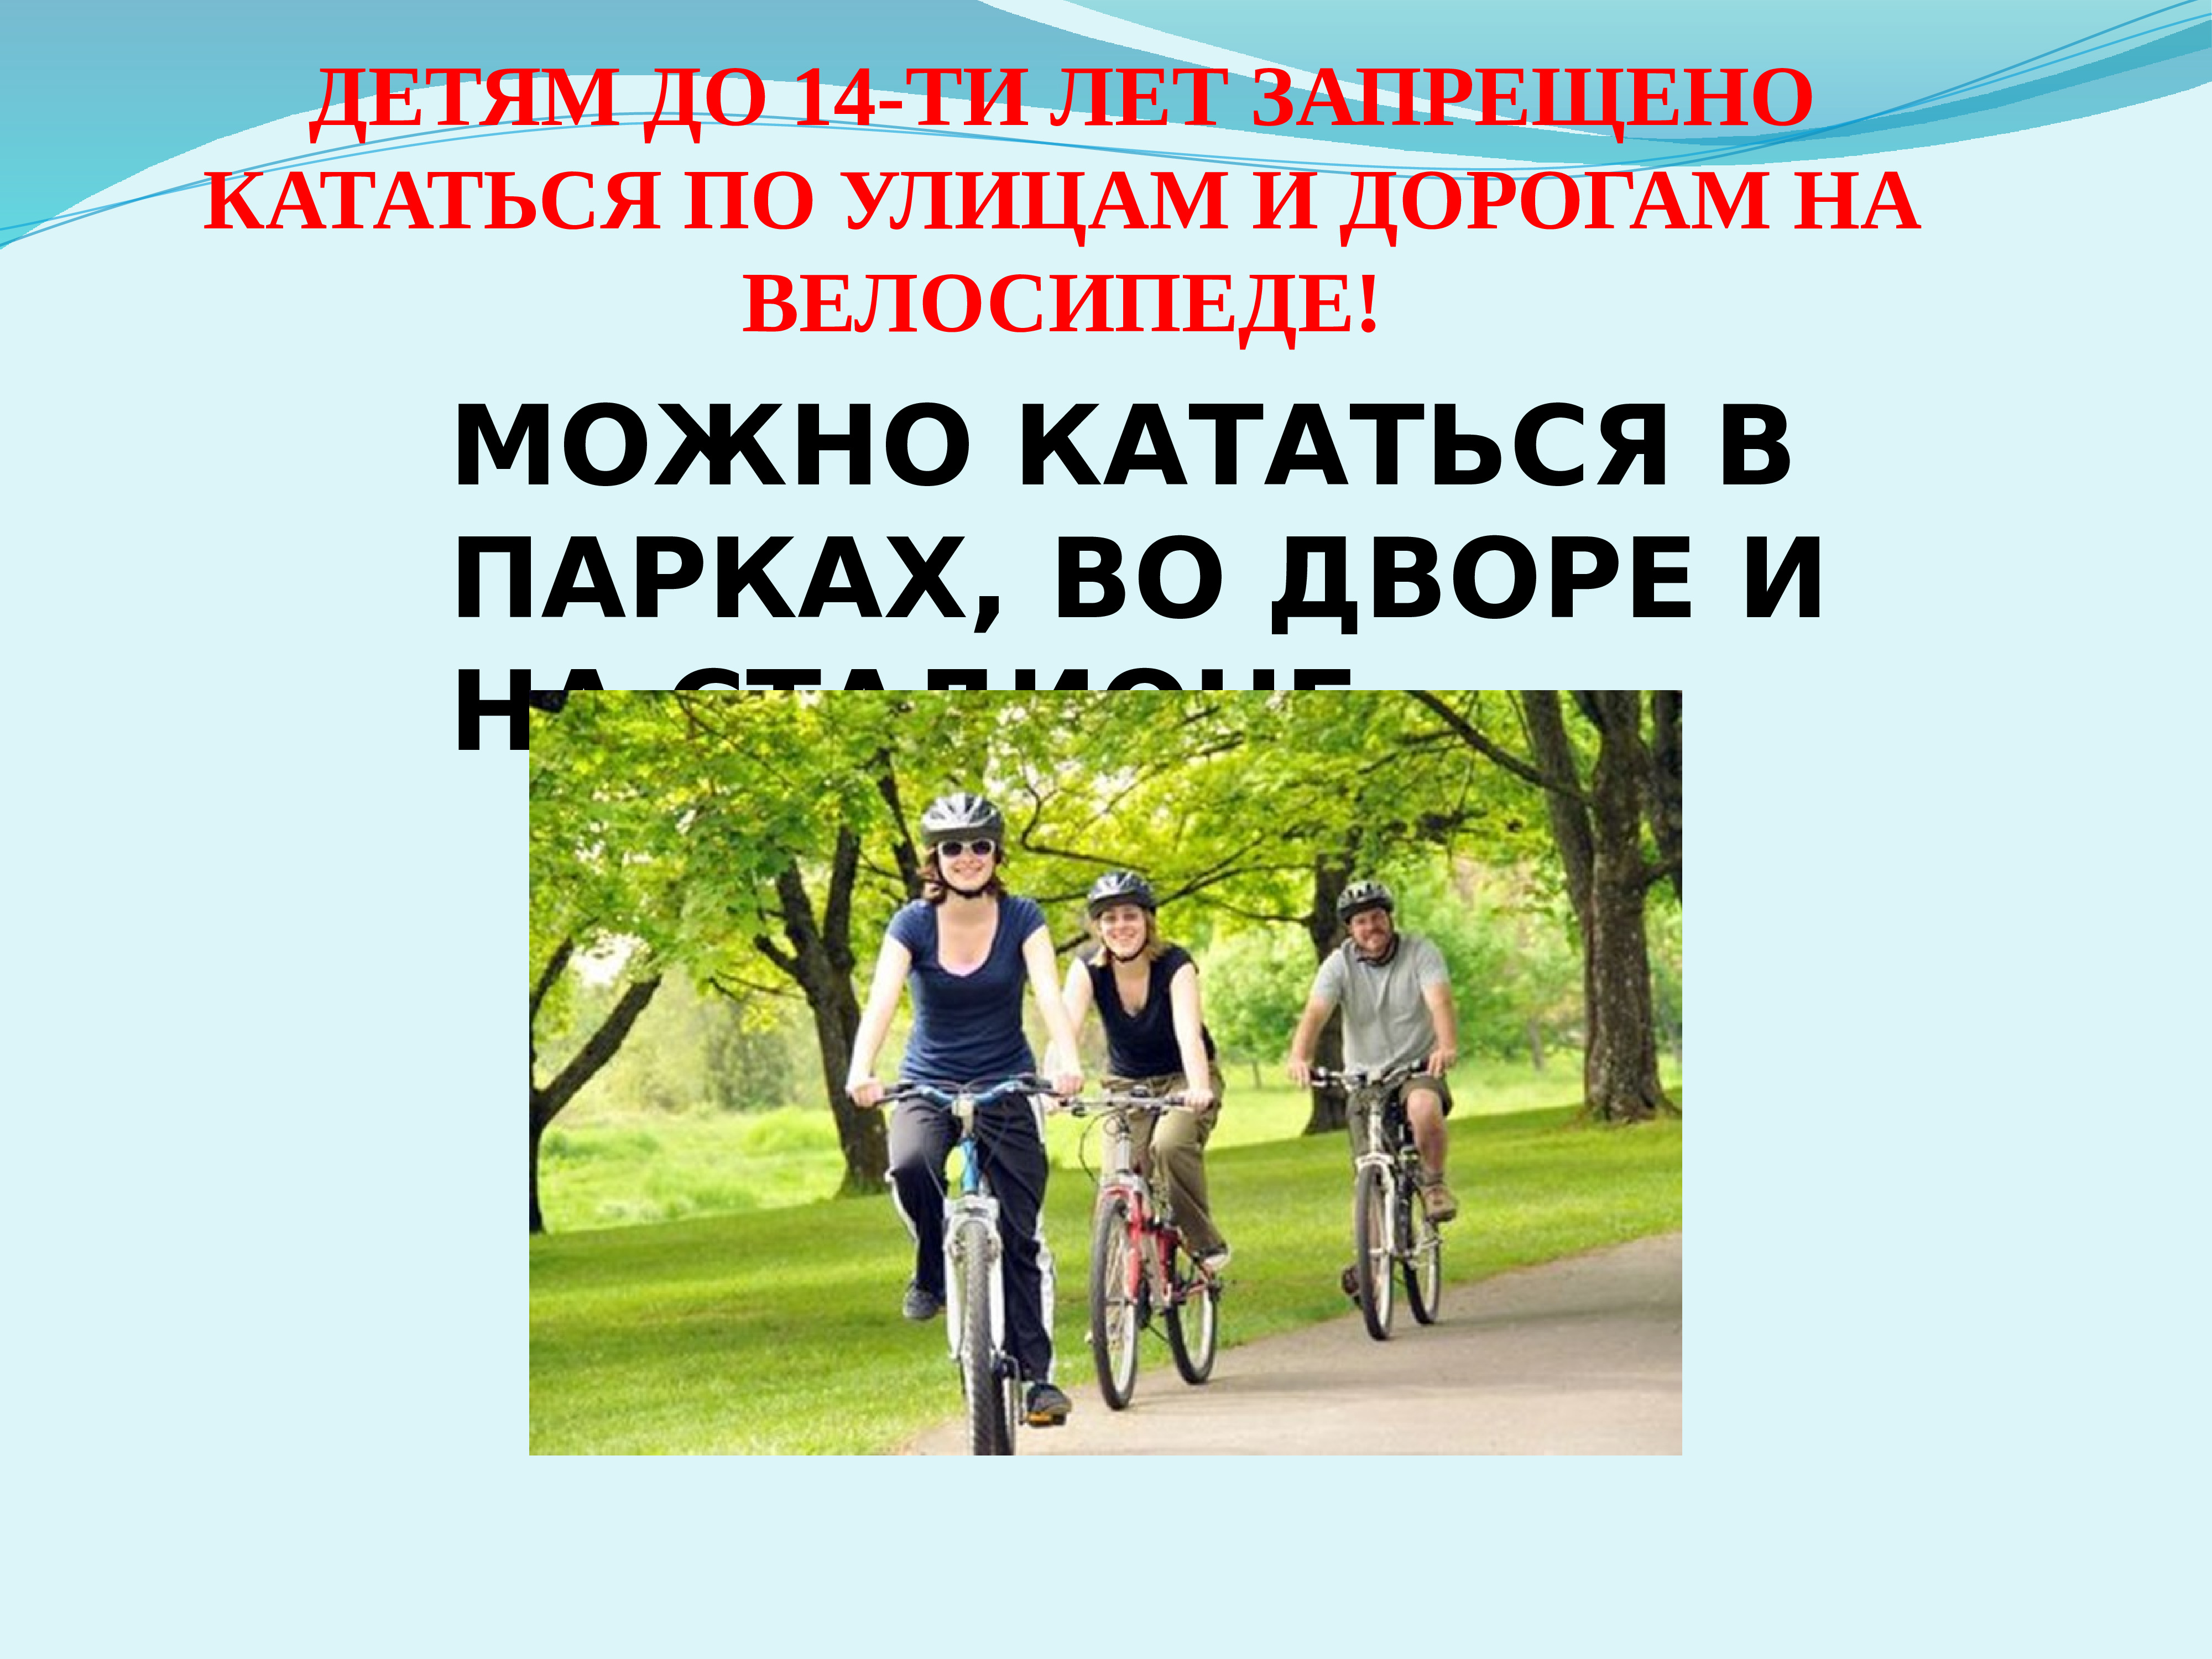 Можно ездить с запретом. Детям разрешено на велосипеде. Можно кататься на велосипеде. Где можно кататься на велосипеде детям. Где можно кататься на велосипеде детям до 14 лет.